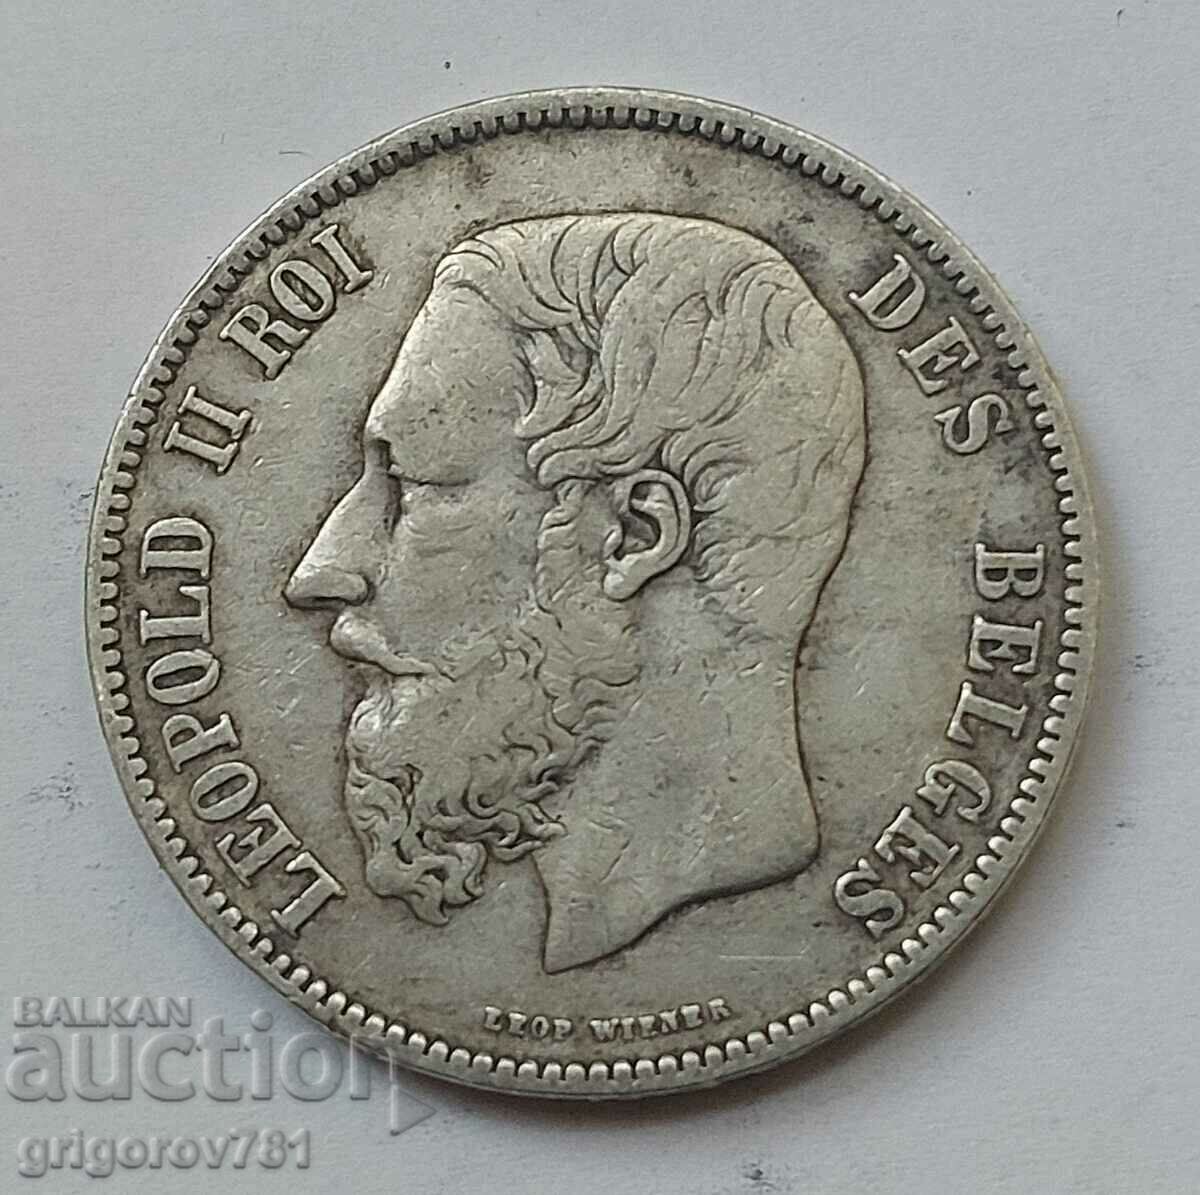 5 Francs Silver Belgium 1873 Silver Coin #177